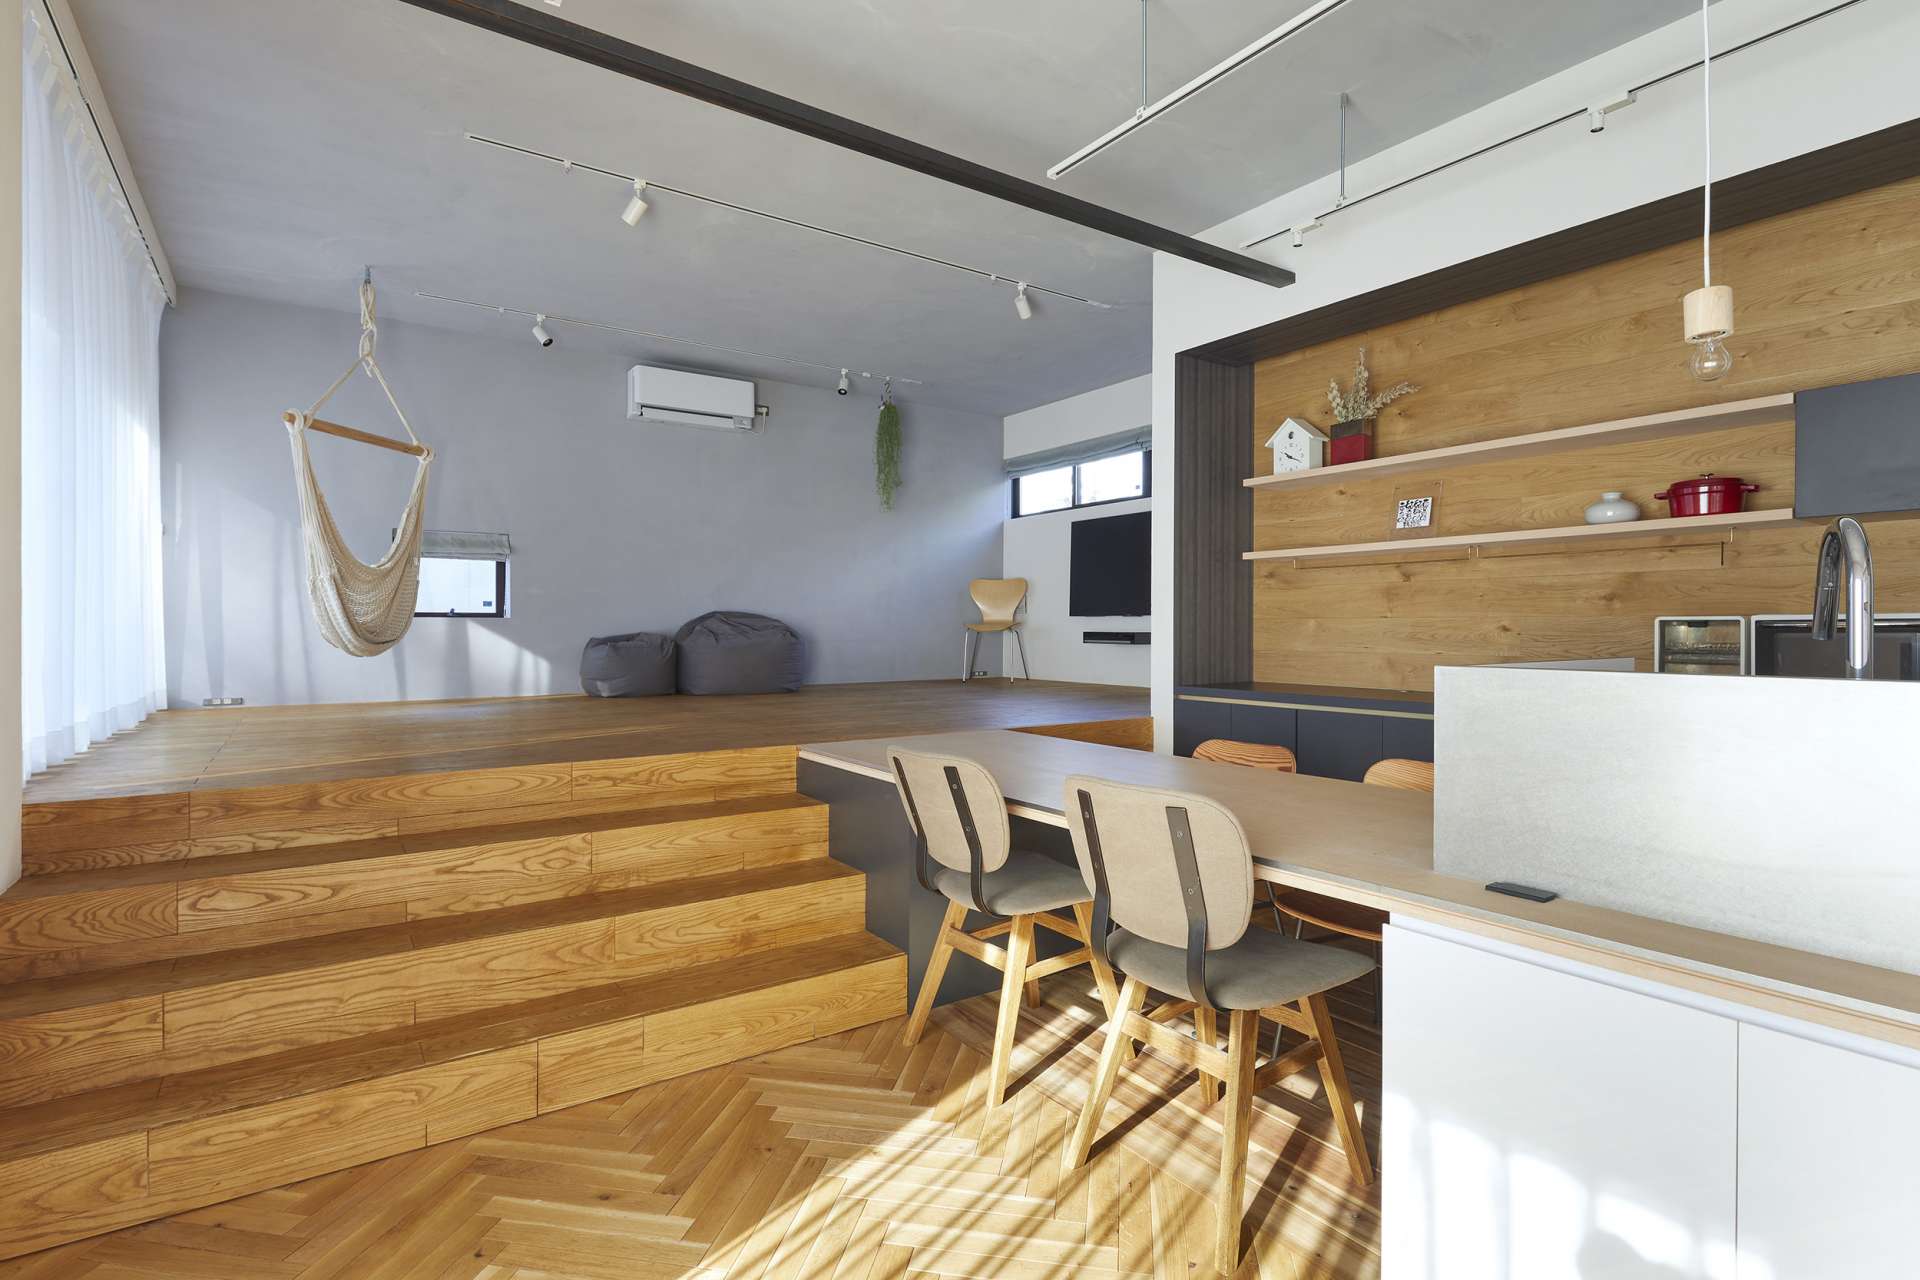 岩国市でおしゃれで快適な家づくり。注文住宅の設計は設計事務所 asazu design office